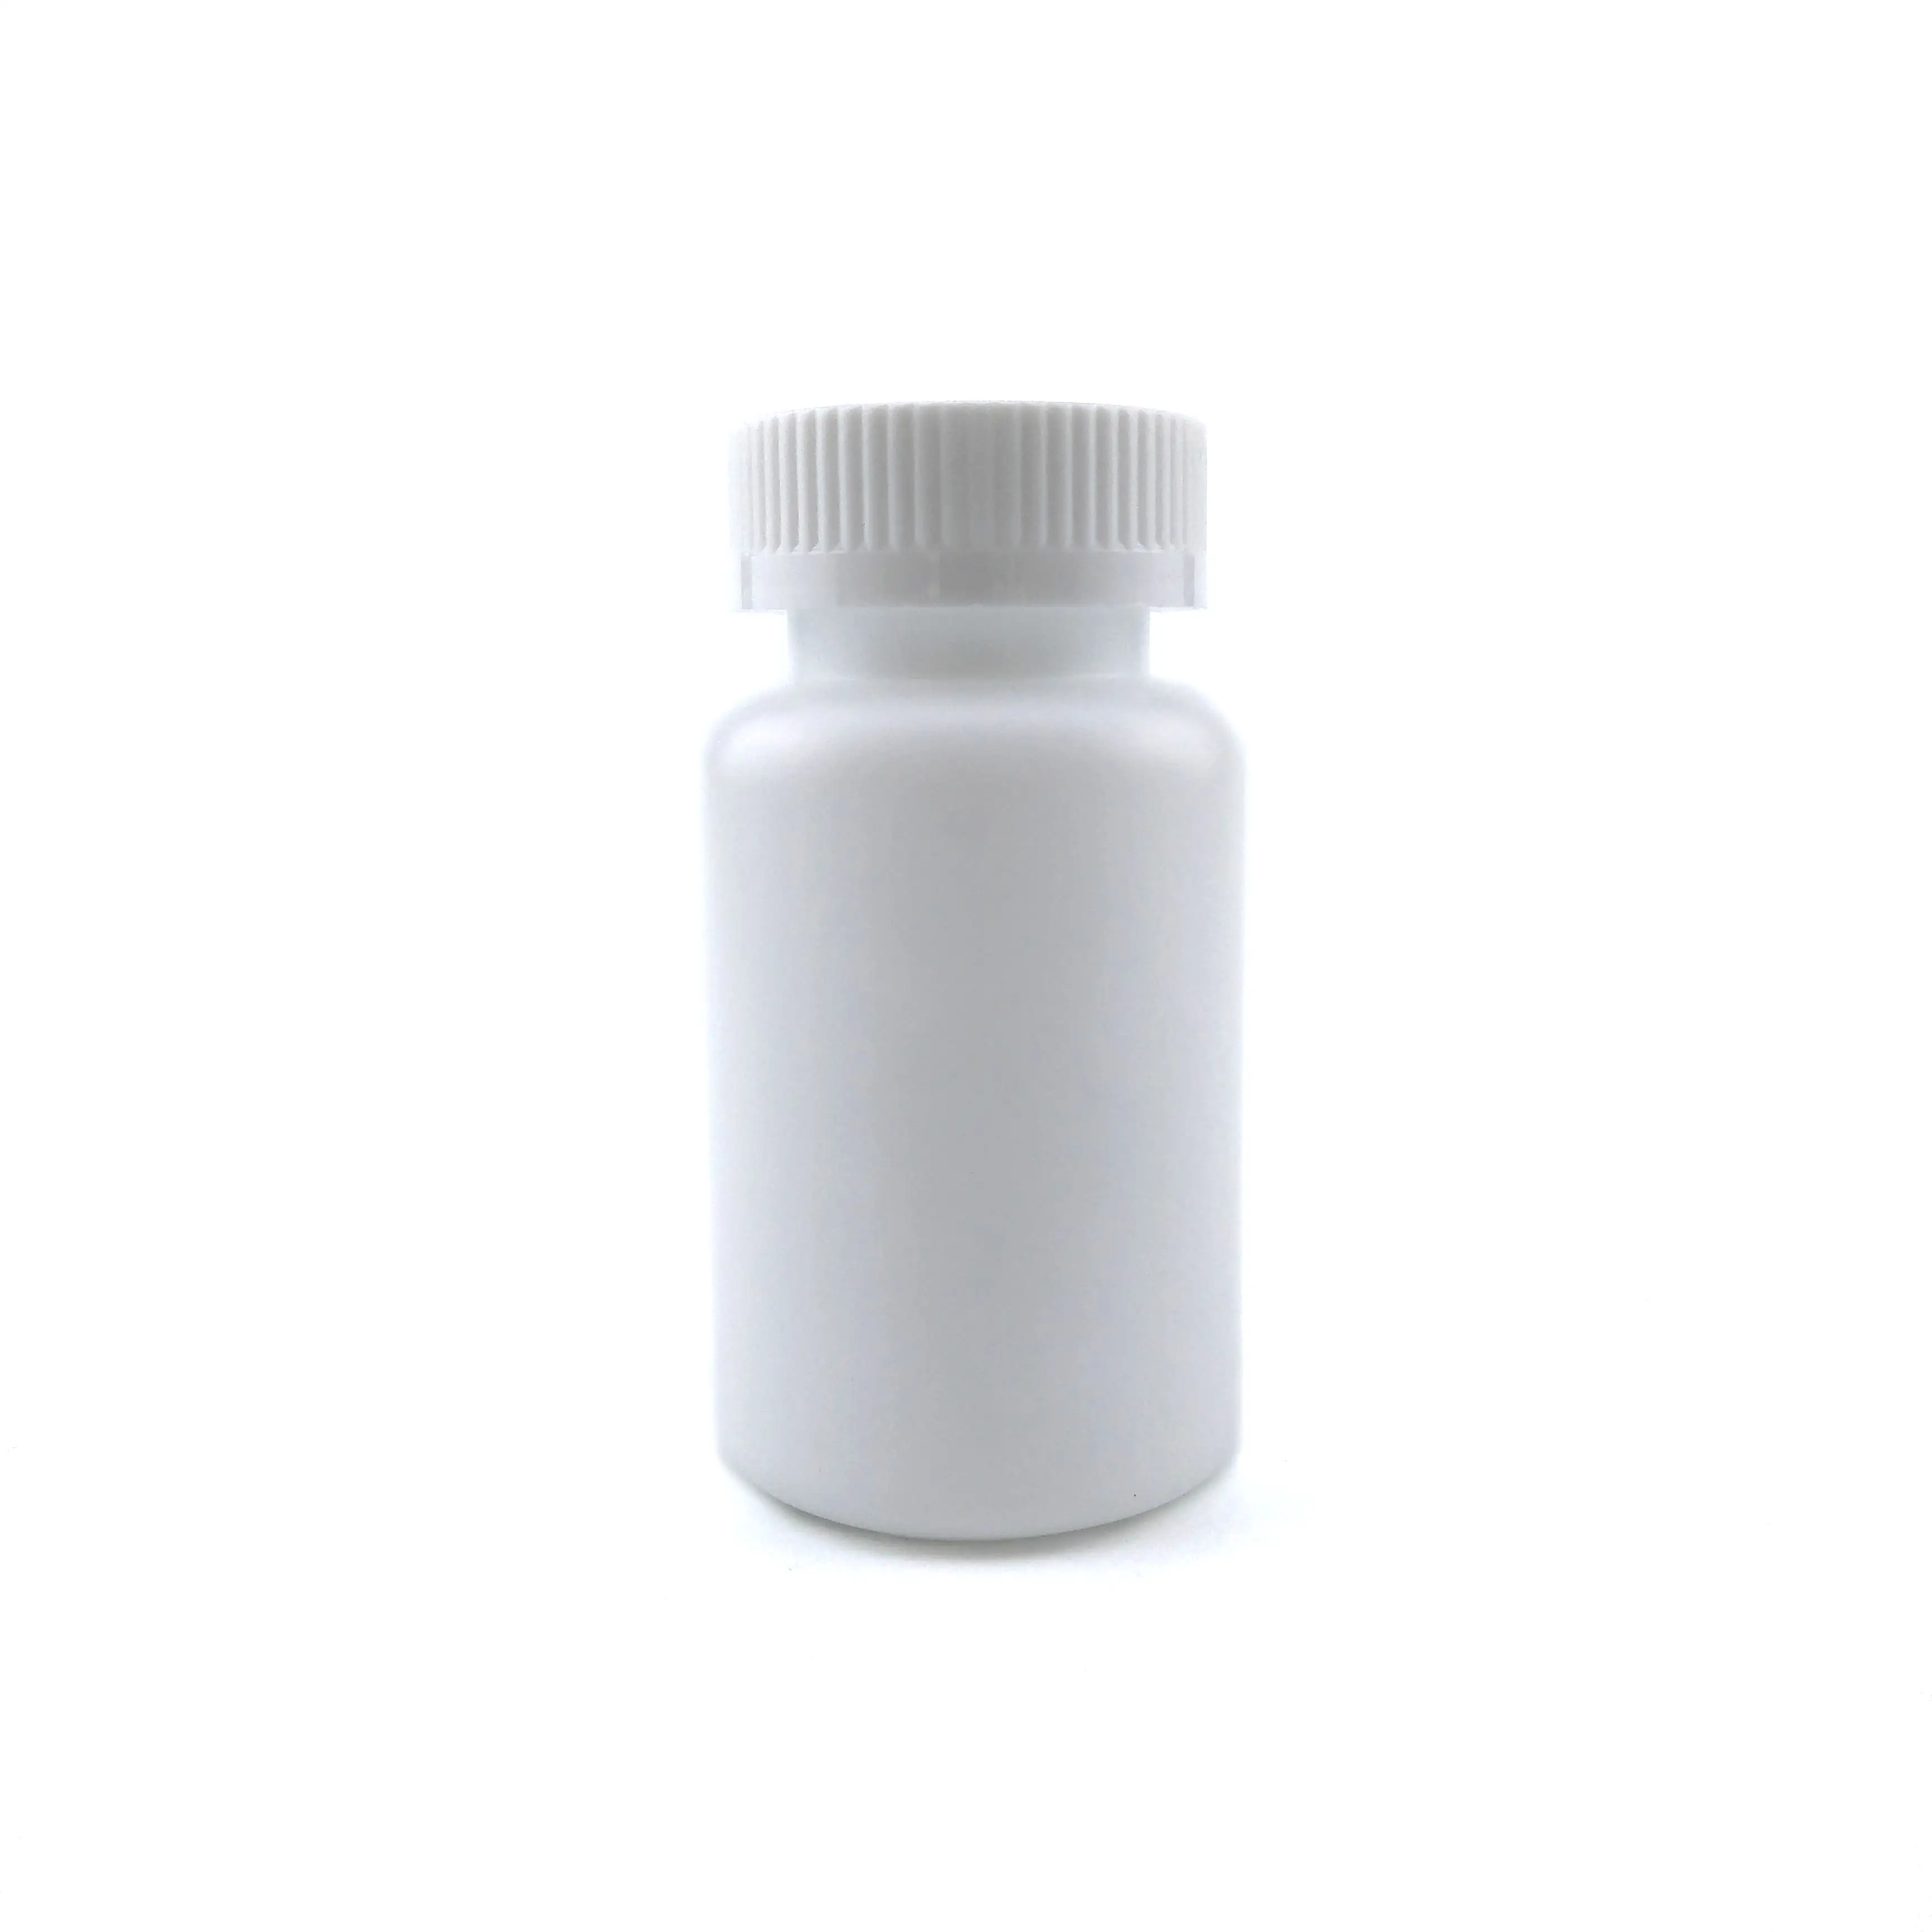 White plastic effervescent tablet pill tube for vitamins C pharmaceutical use empty tubes